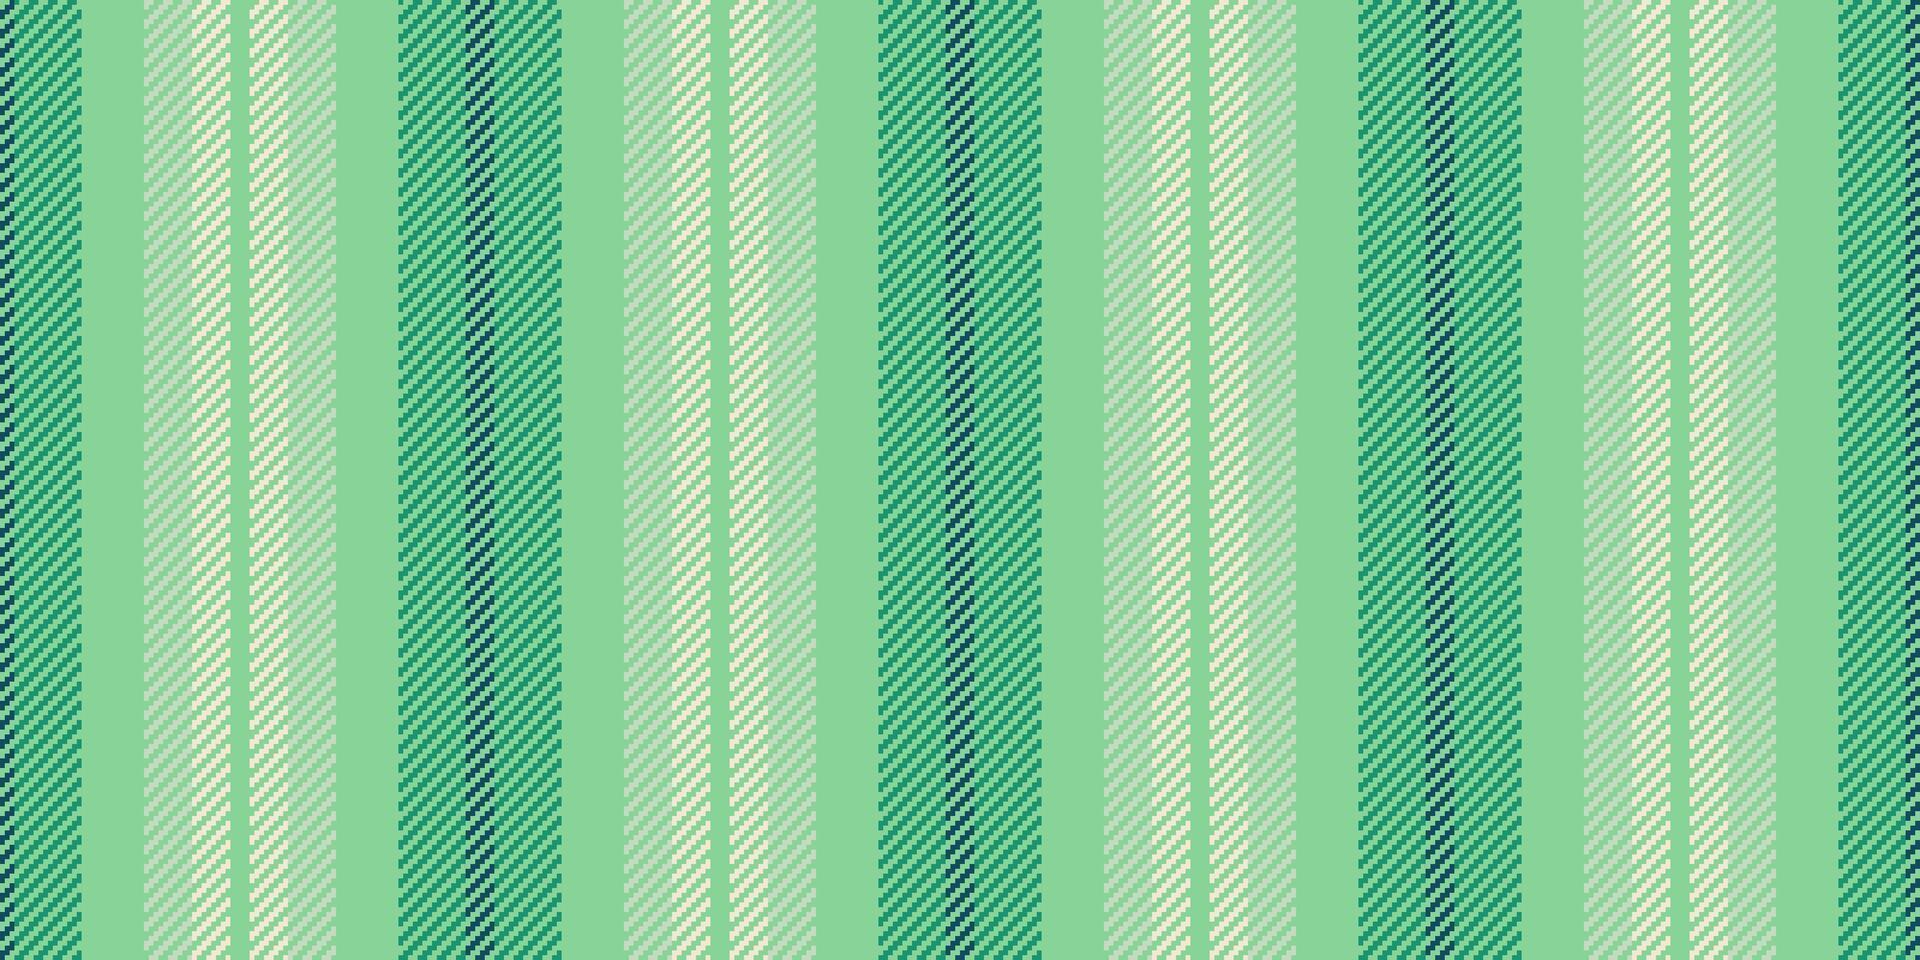 Platz Muster Vertikale Textil, Limette Textur Streifen Linien. Bedienung Stoff Vektor nahtlos Hintergrund im Grün und Licht Farben.